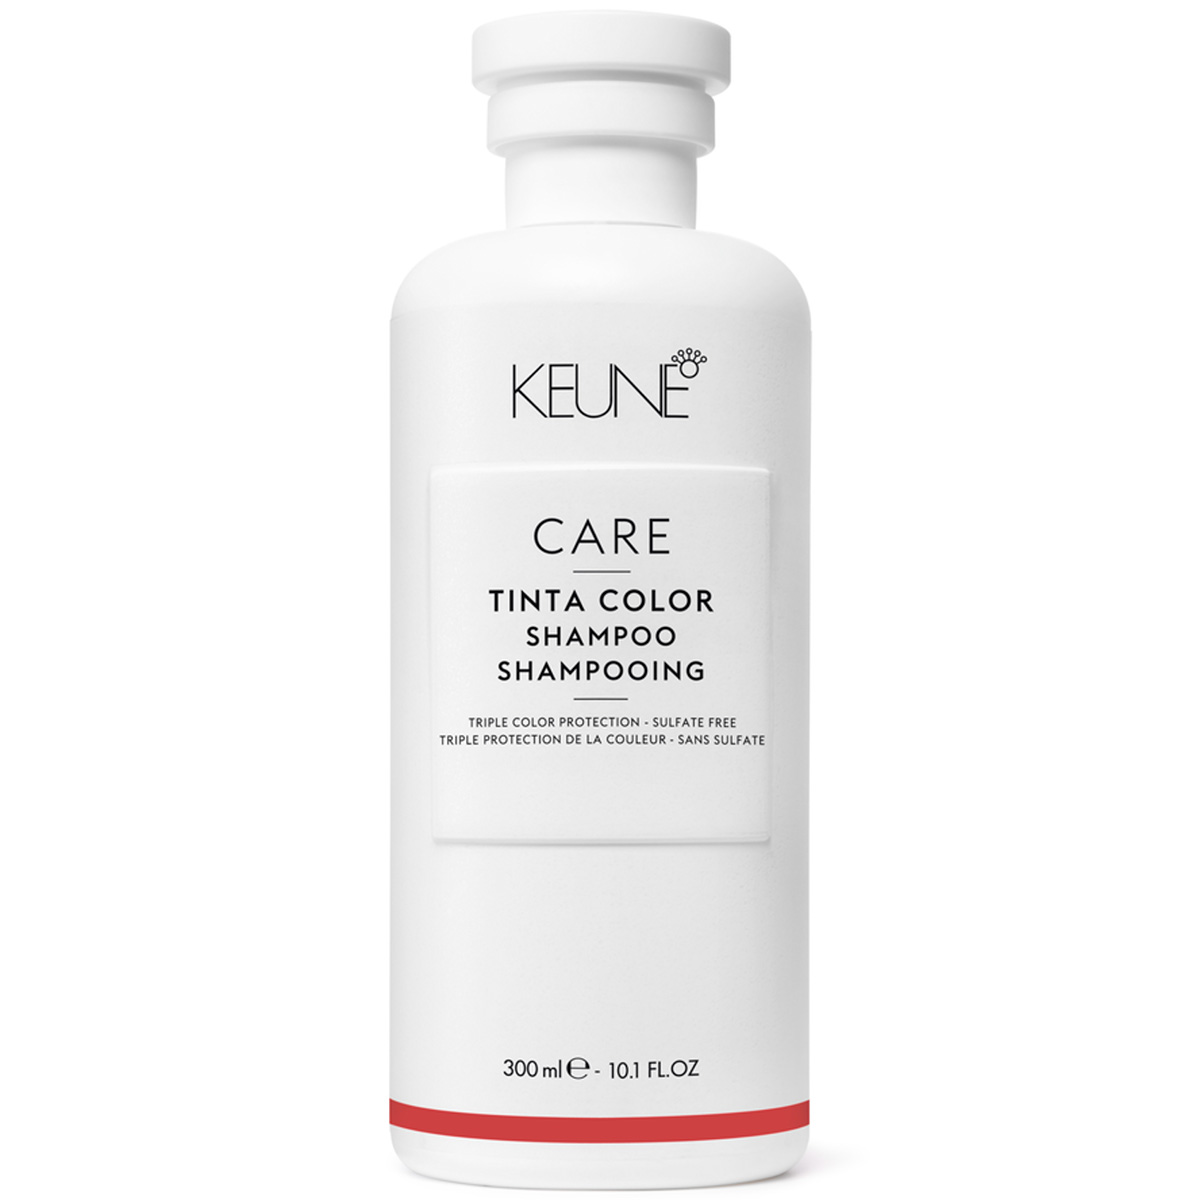 Keune Бессульфатный шампунь для окрашенных волос, 300 мл (Keune, Care)